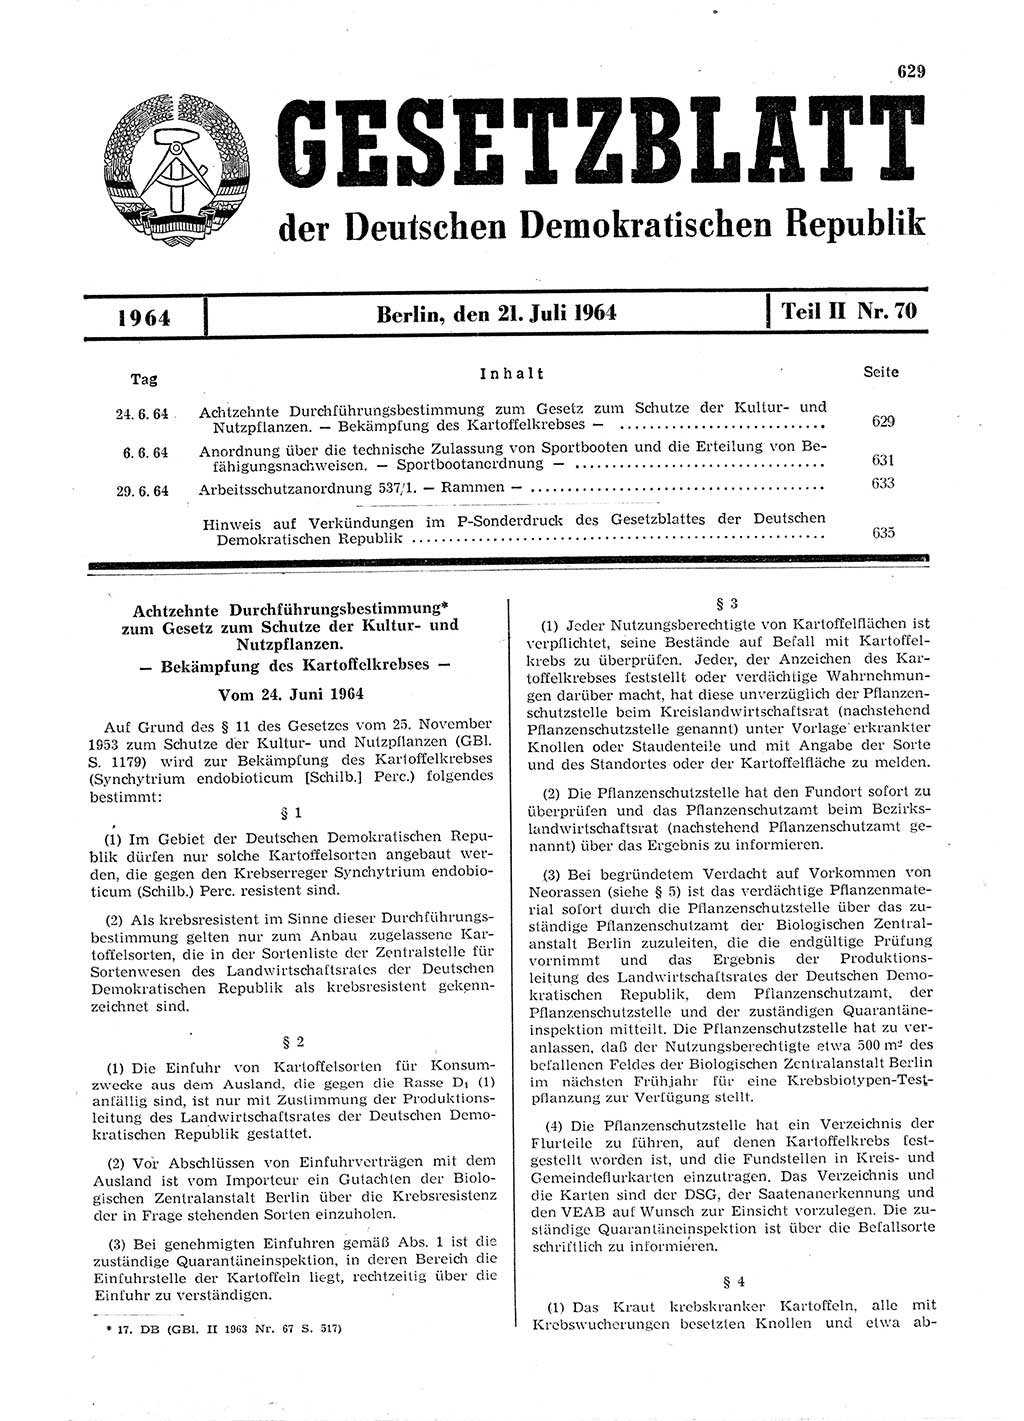 Gesetzblatt (GBl.) der Deutschen Demokratischen Republik (DDR) Teil ⅠⅠ 1964, Seite 629 (GBl. DDR ⅠⅠ 1964, S. 629)